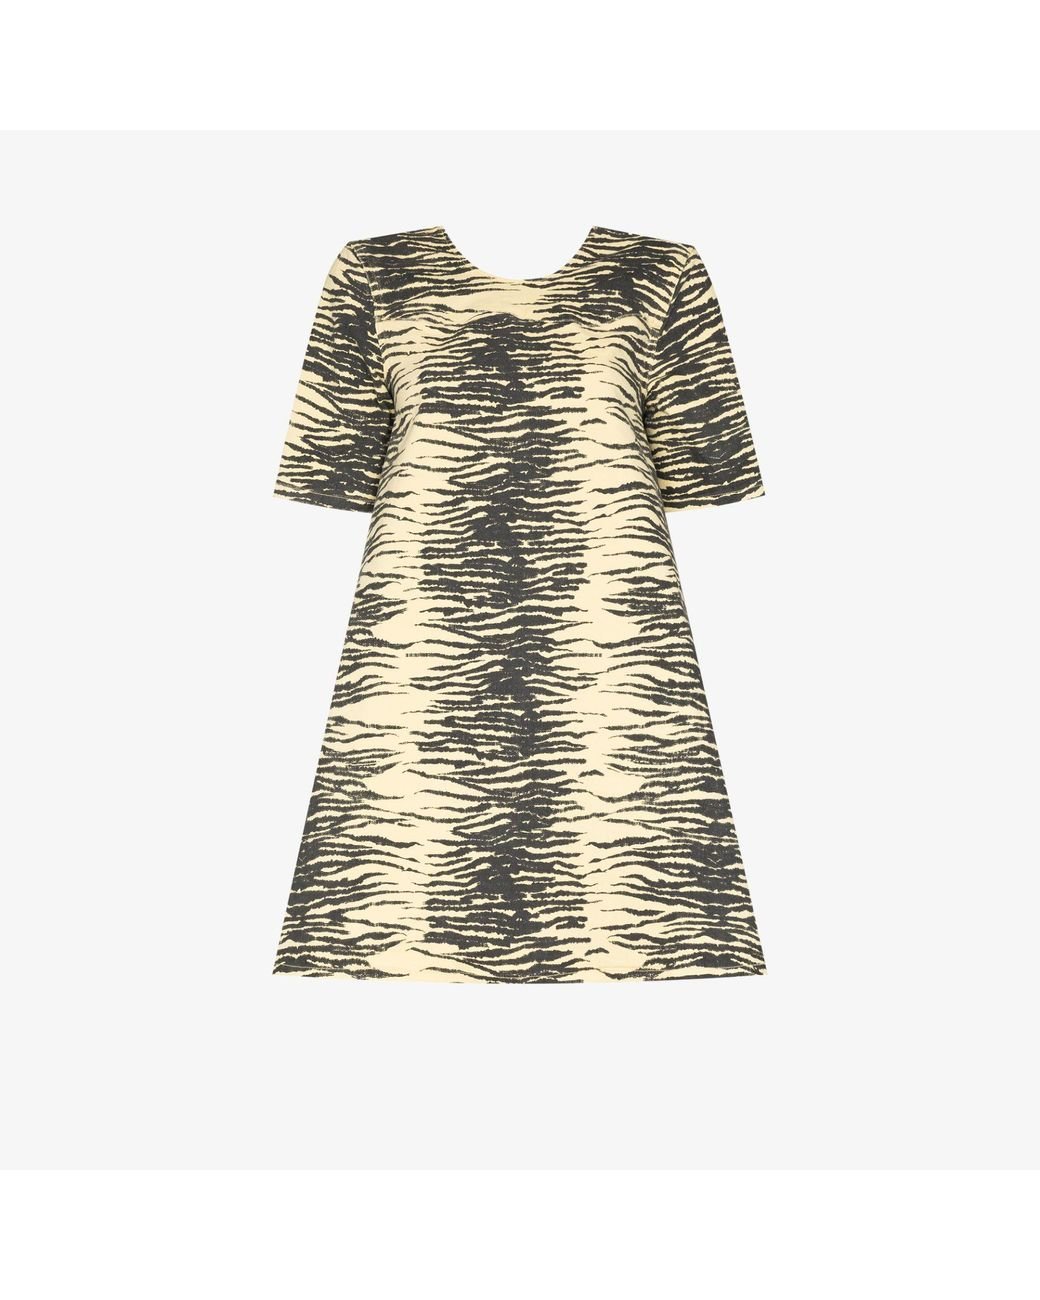 Ganni Yellow Tiger Print Dress | Lyst